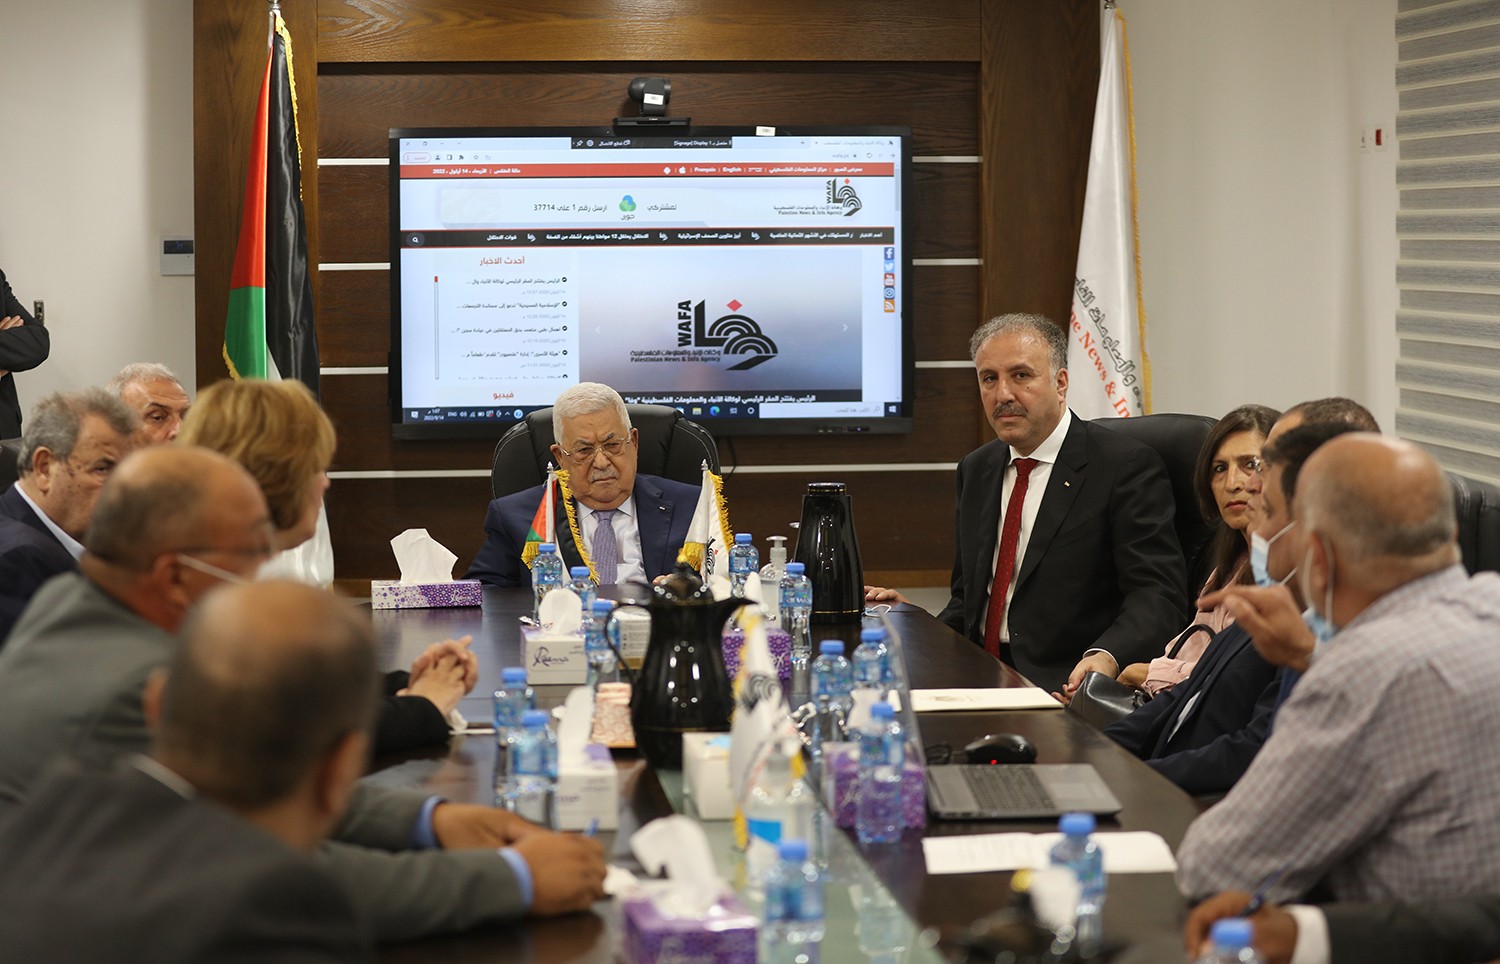 رام الله - الرئيس محمود عباس، يفتتح المقر المؤقت لوكالة الانباء والمعلومات الفلسطينية - وفا 6(2).jpg